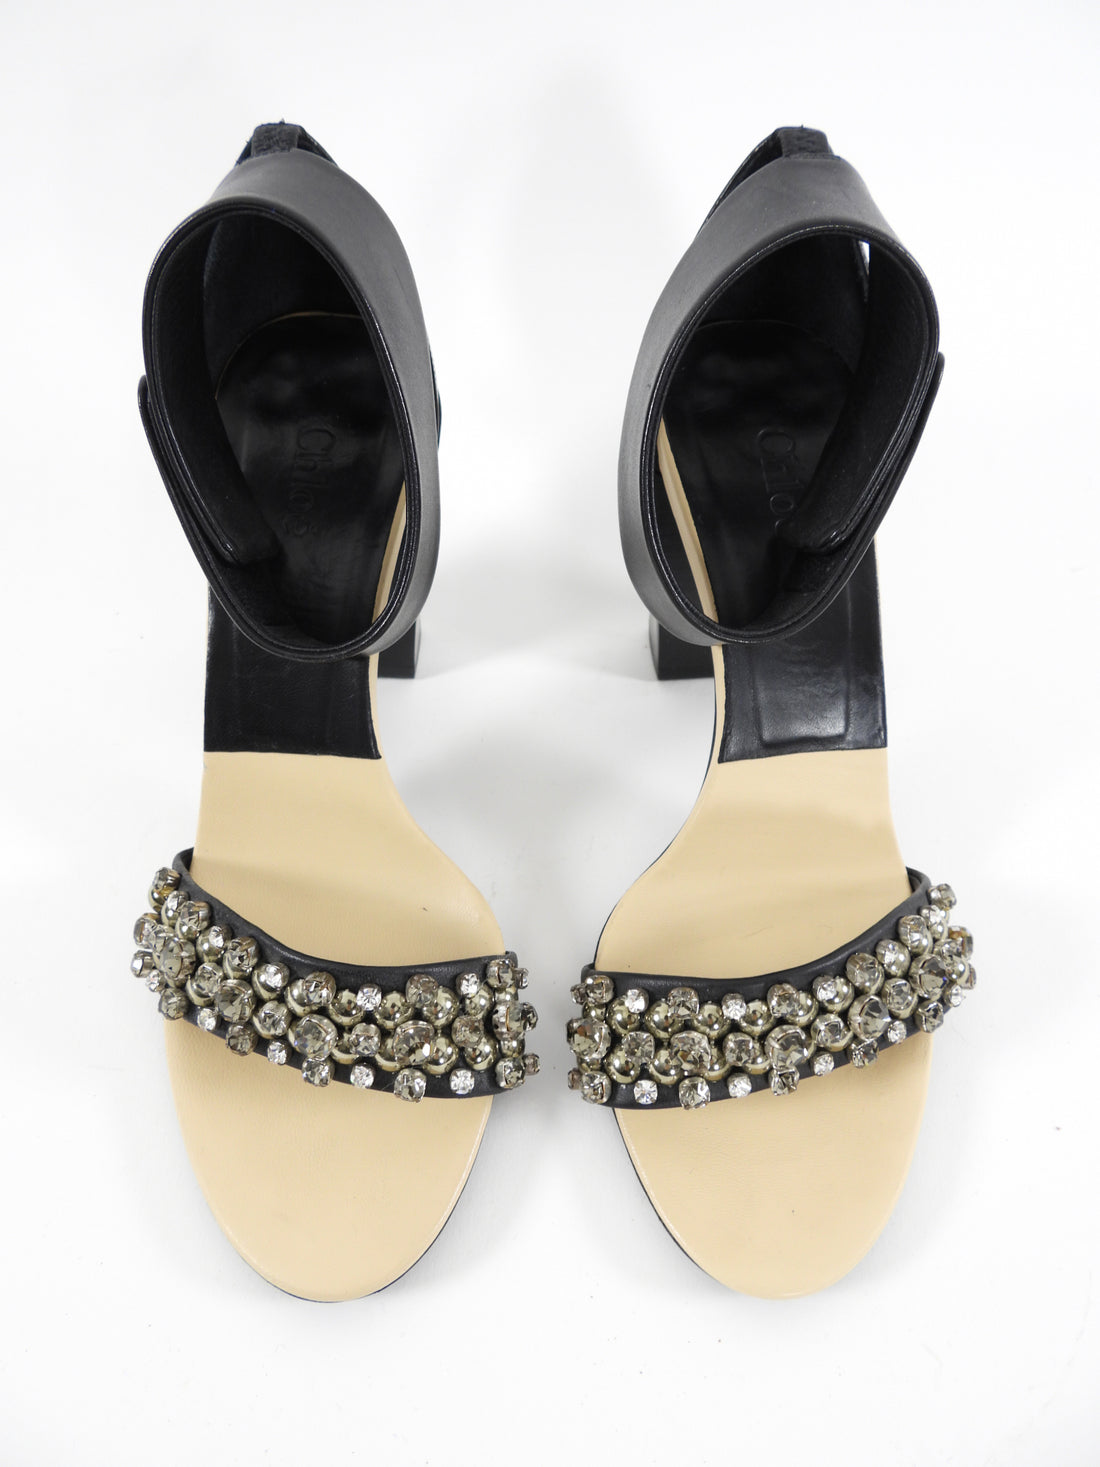 Chloe Black and Nude Jewel Embellished Block Heel Sandal - 38 – I MISS YOU  VINTAGE